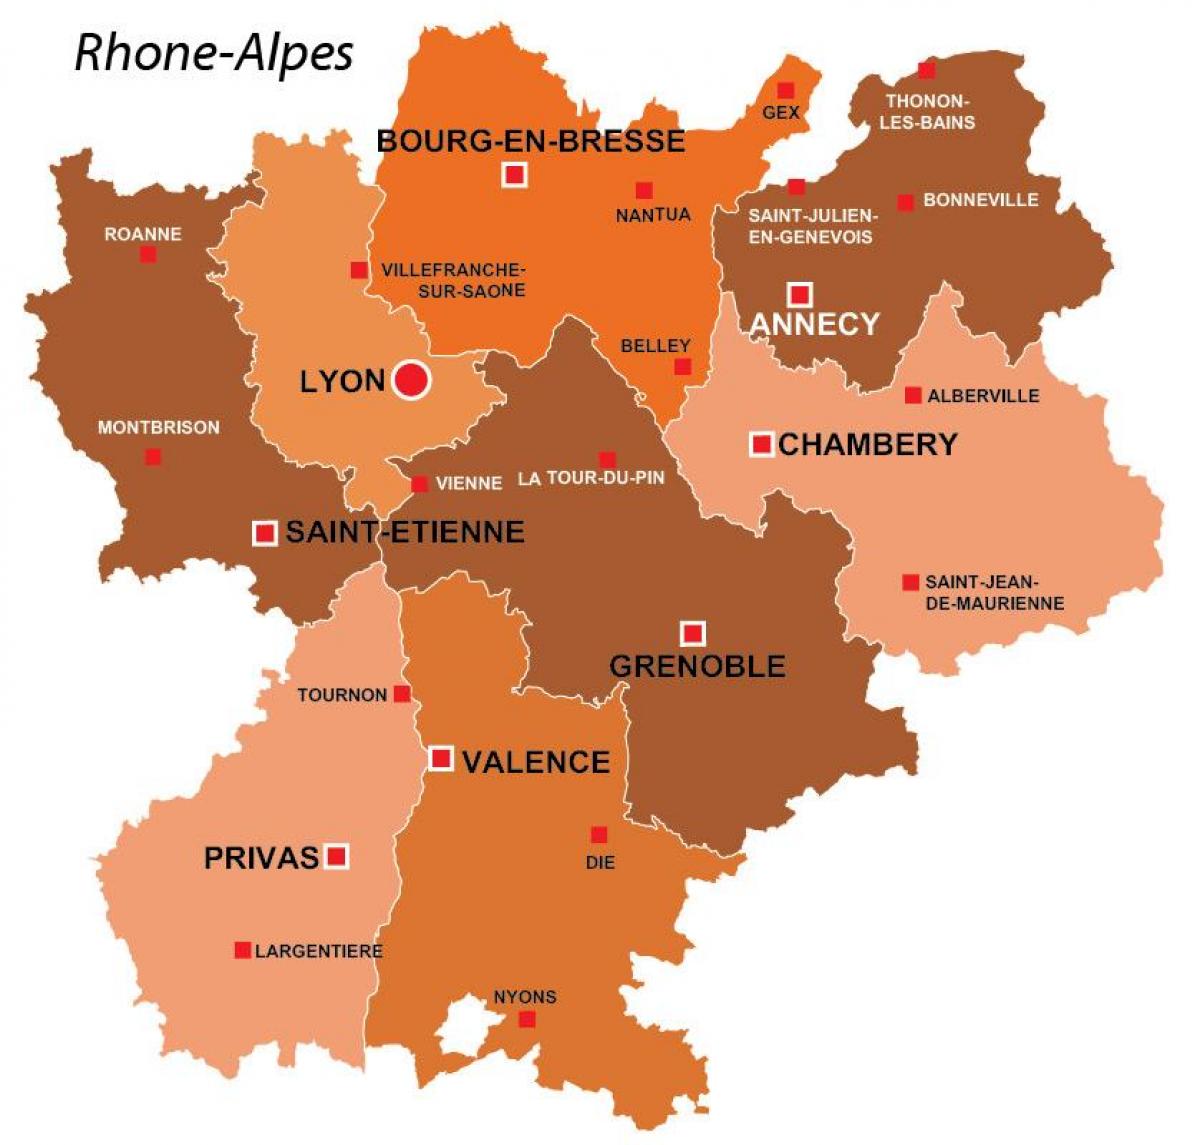 Lyon region, Frankreich-map